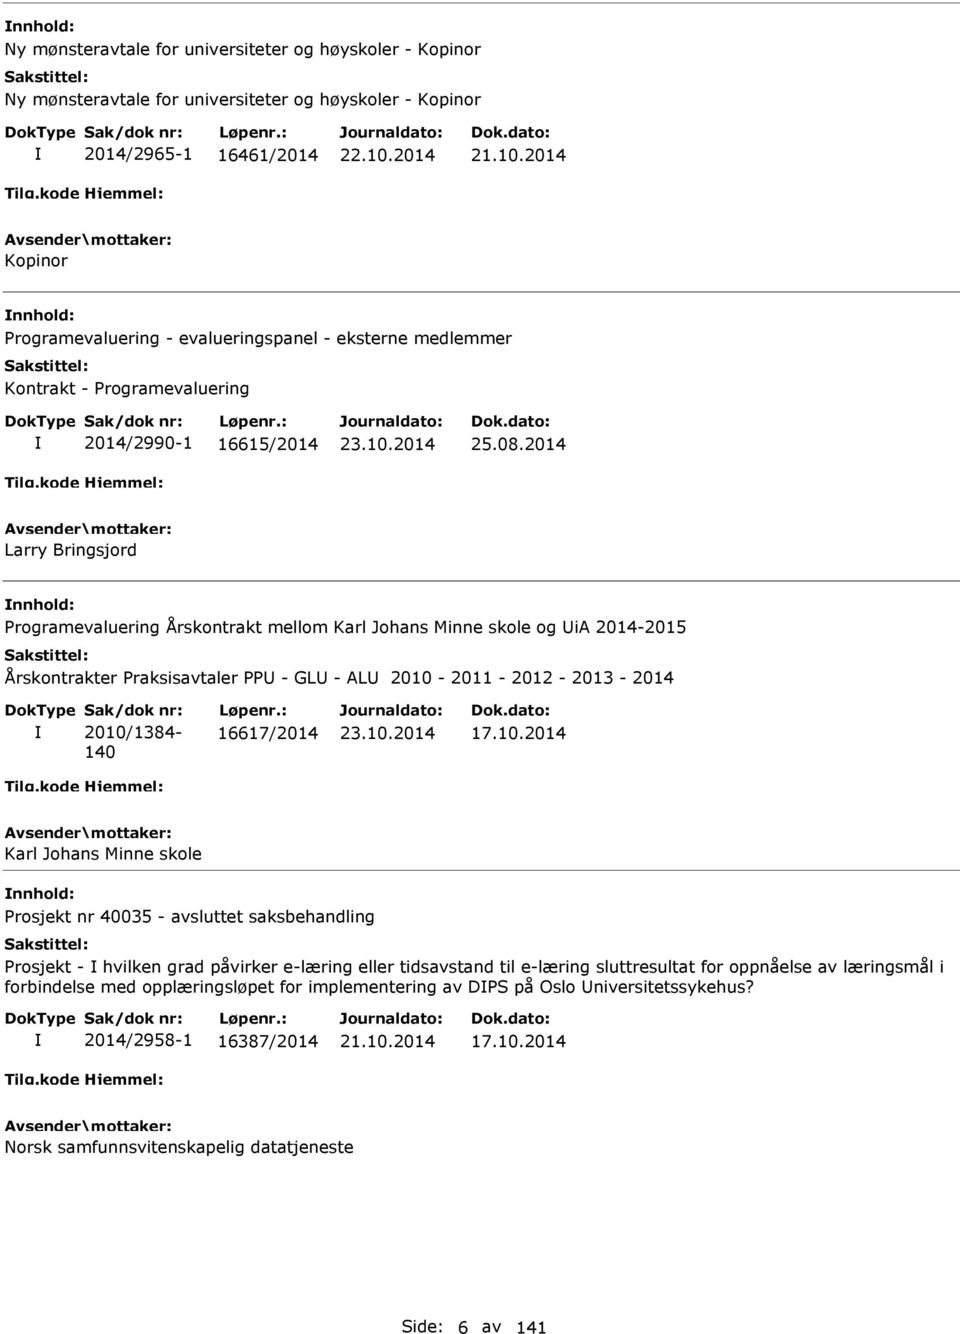 2014 Larry Bringsjord Programevaluering Årskontrakt mellom Karl Johans Minne skole og UiA 2014-2015 Årskontrakter Praksisavtaler PPU - GLU - ALU 2010-2011 - 2012-2013 - 2014 Sak/dok nr: 2010/1384-140